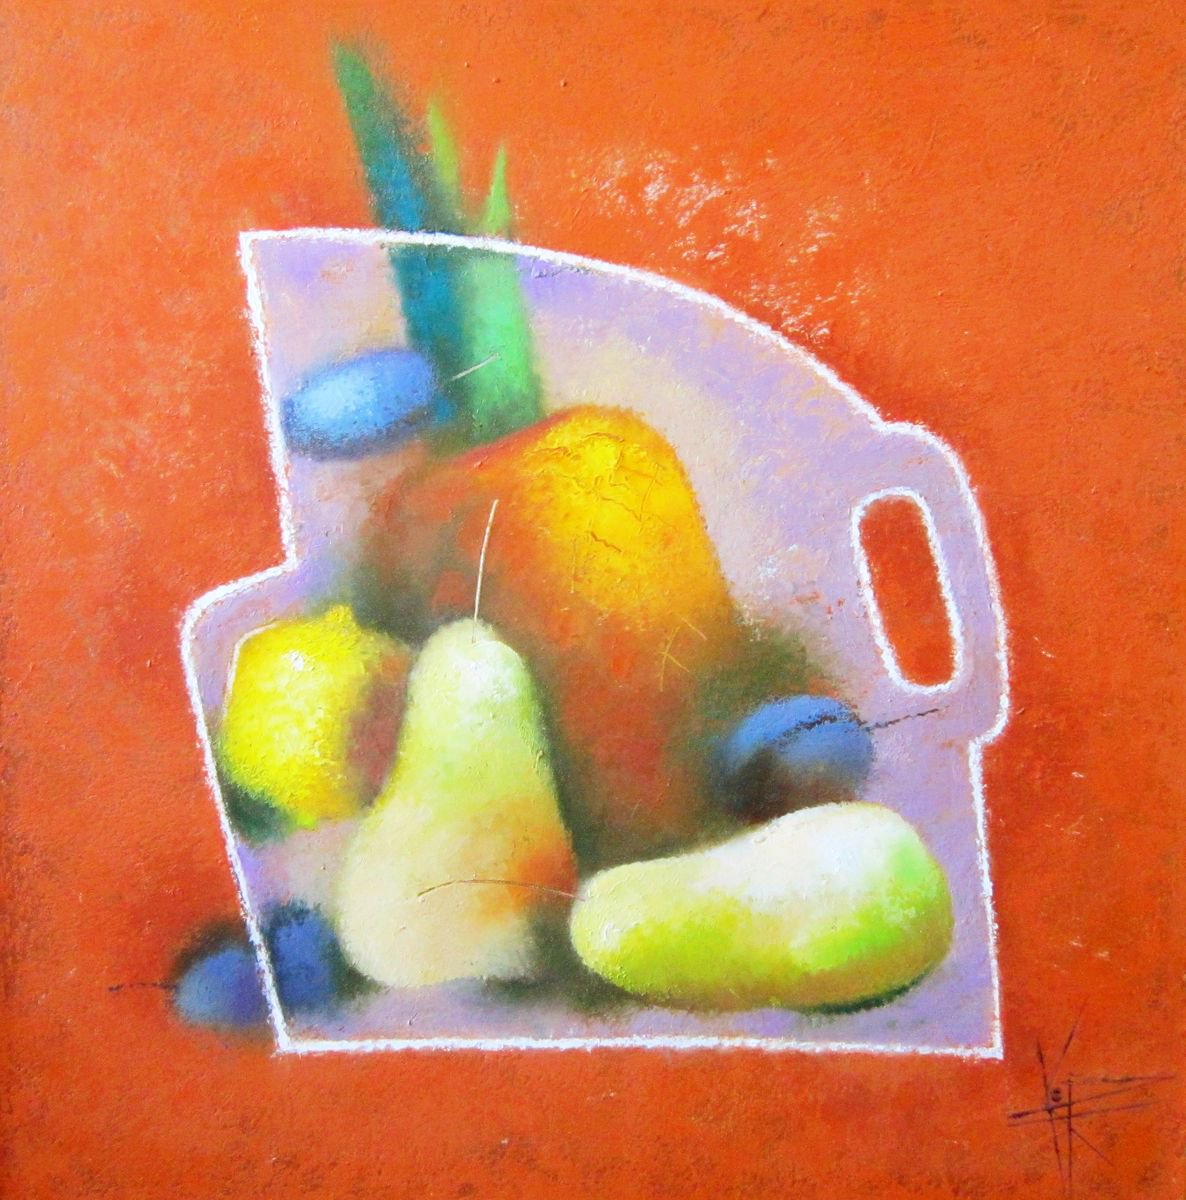 Fruits theme by Oksana Kornienko